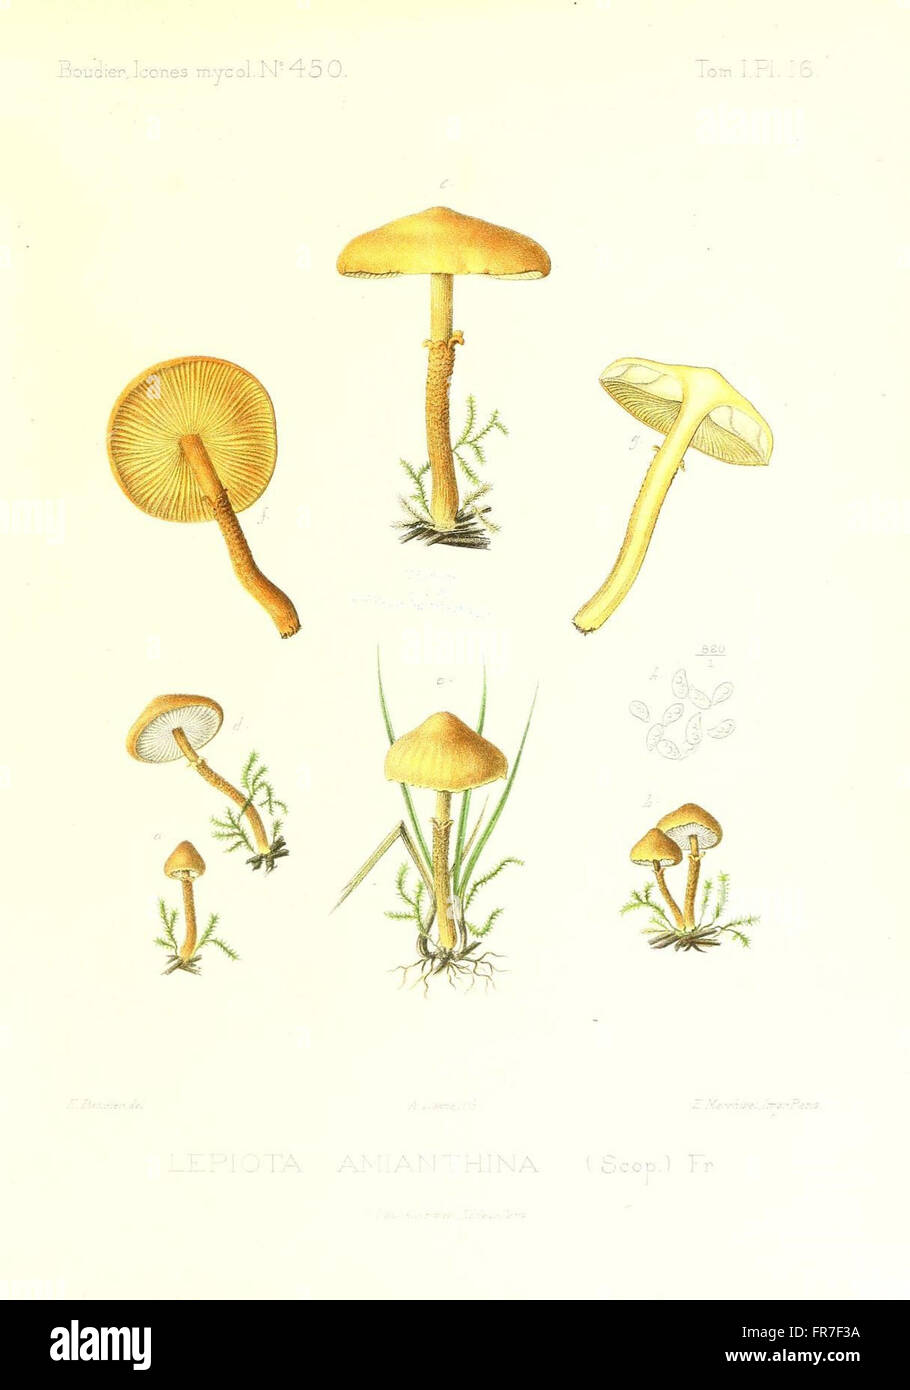 Icones mycologicC3A6, ou Iconographie des champignons de France principalement Discomycetes (Pl. 16) Stock Photo